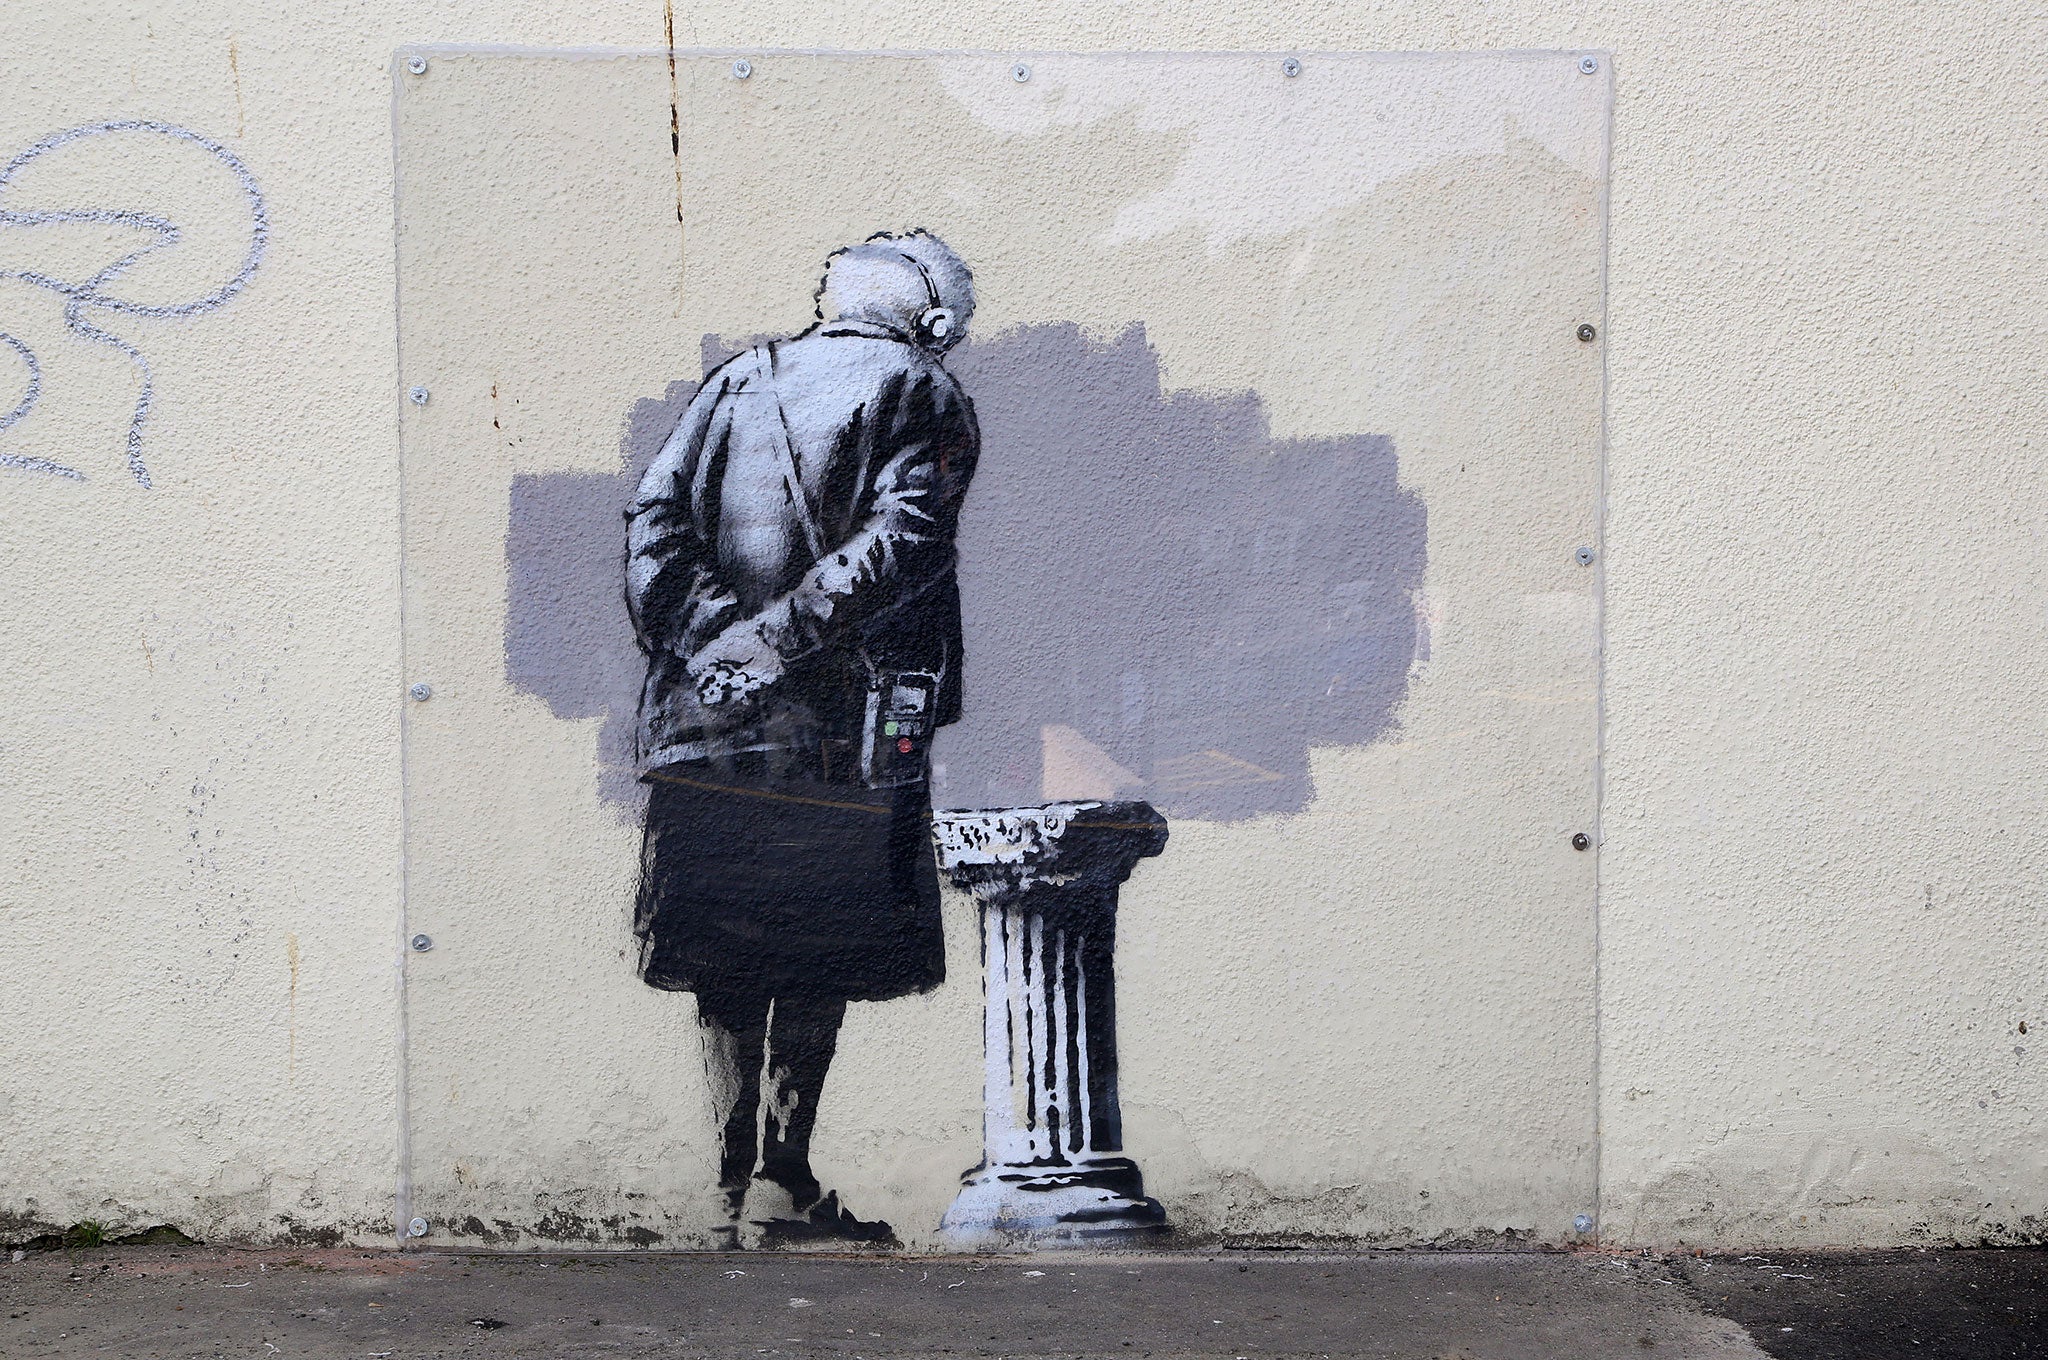 The Banksy image in Folkestone before it was vandalised